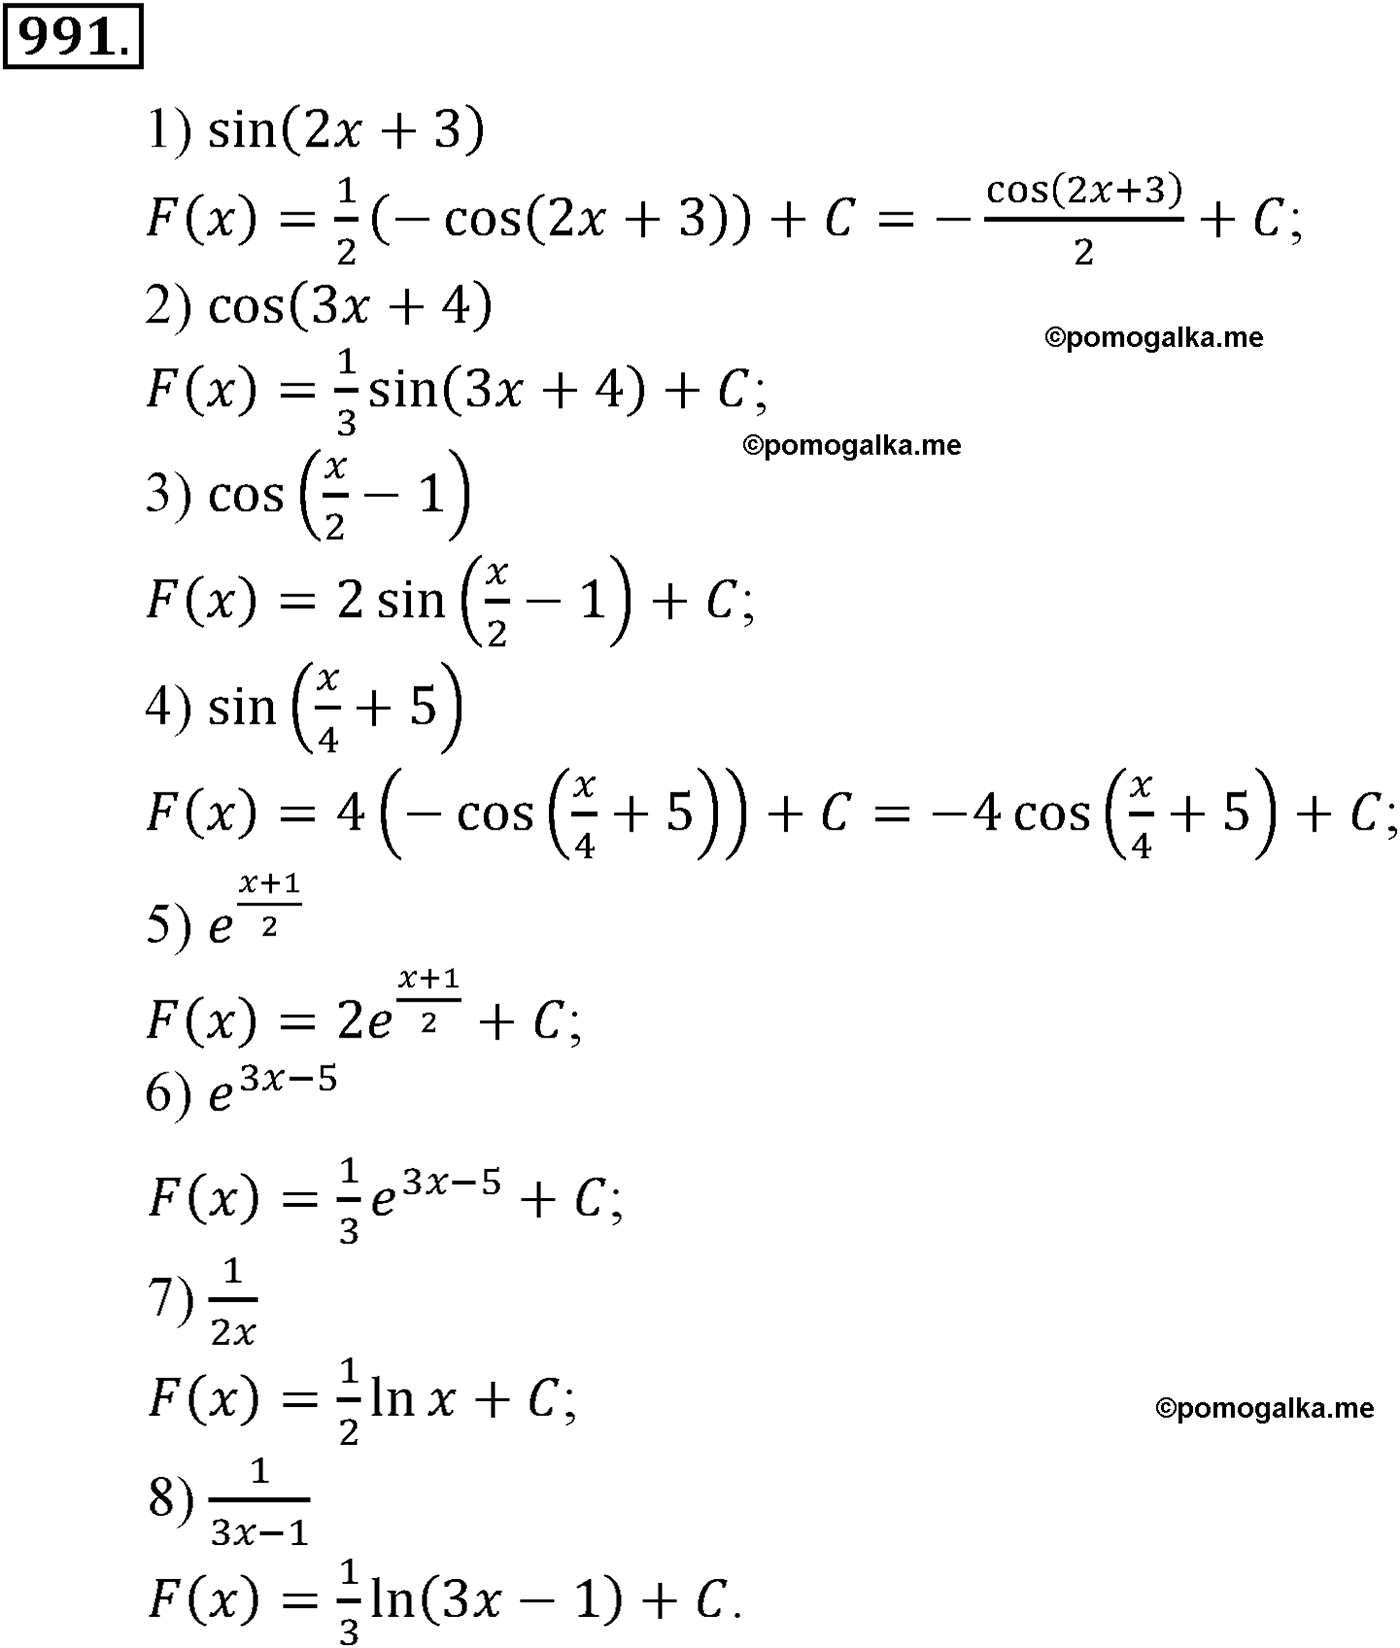 разбор задачи №991 по алгебре за 10-11 класс из учебника Алимова, Колягина